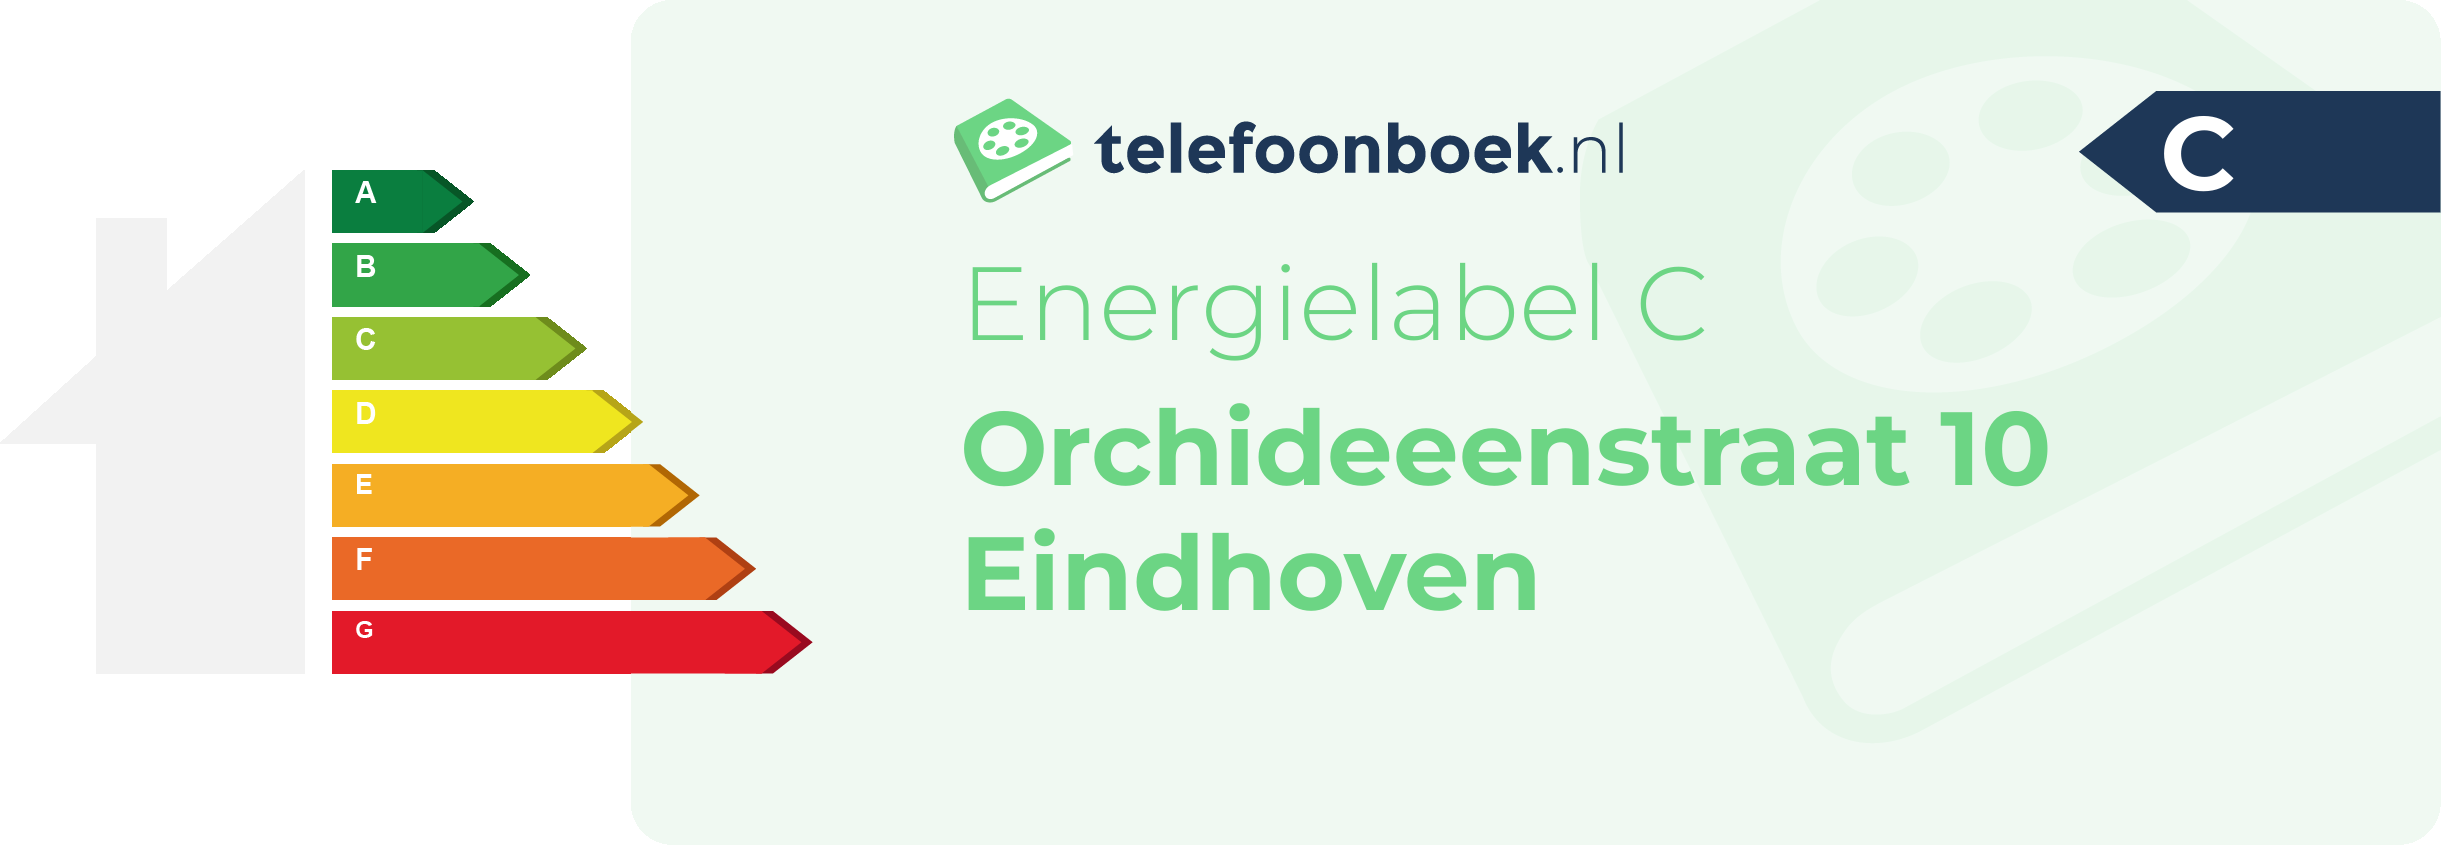 Energielabel Orchideeenstraat 10 Eindhoven